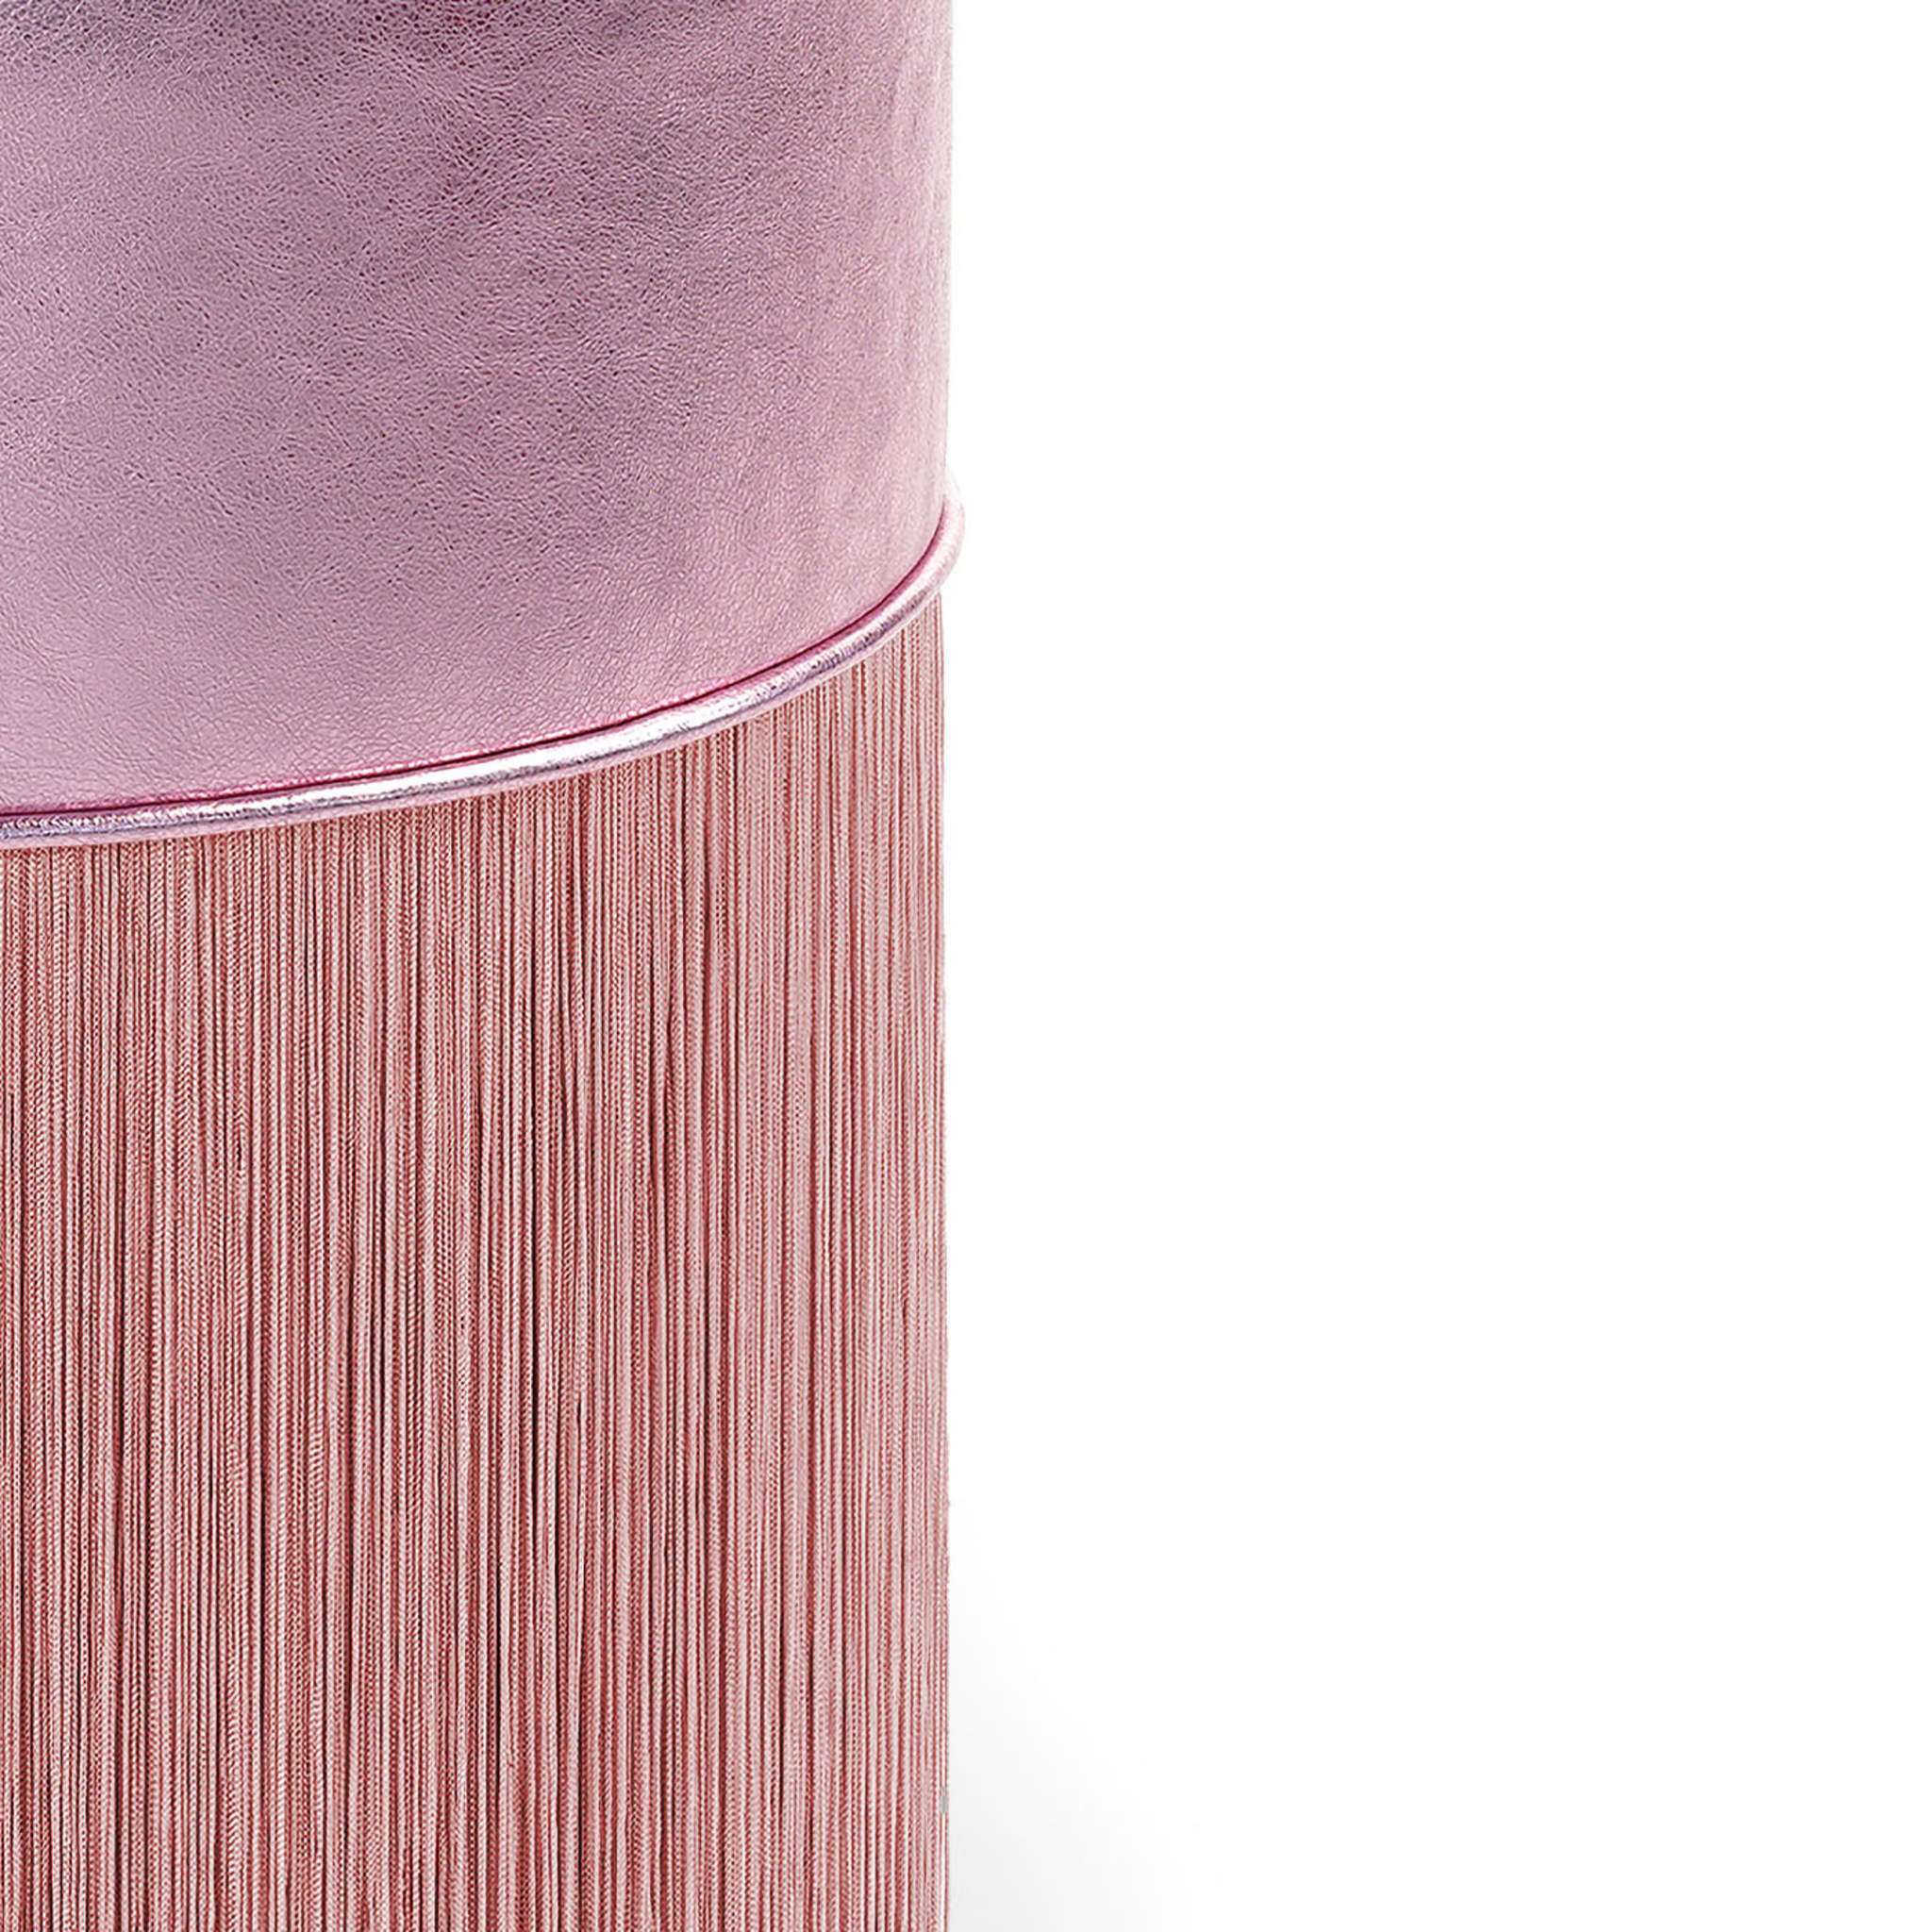 Pouf in pelle metallizzata rosa #2 di Lorenza Bozzoli - Vista alternativa 1